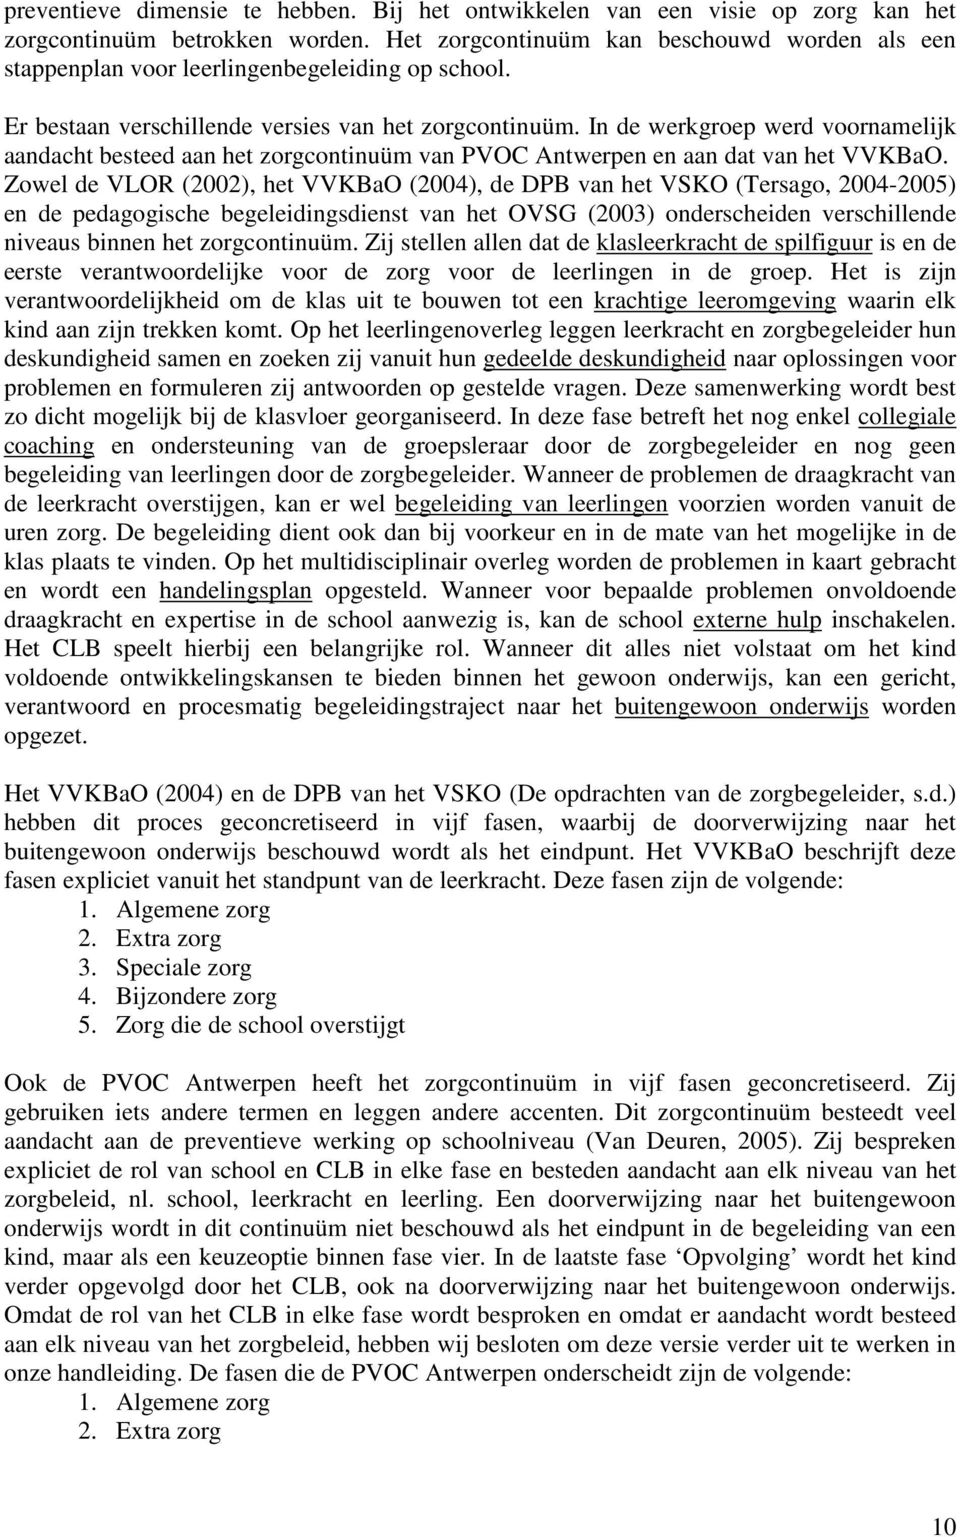 In de werkgroep werd voornamelijk aandacht besteed aan het zorgcontinuüm van PVOC Antwerpen en aan dat van het VVKBaO.